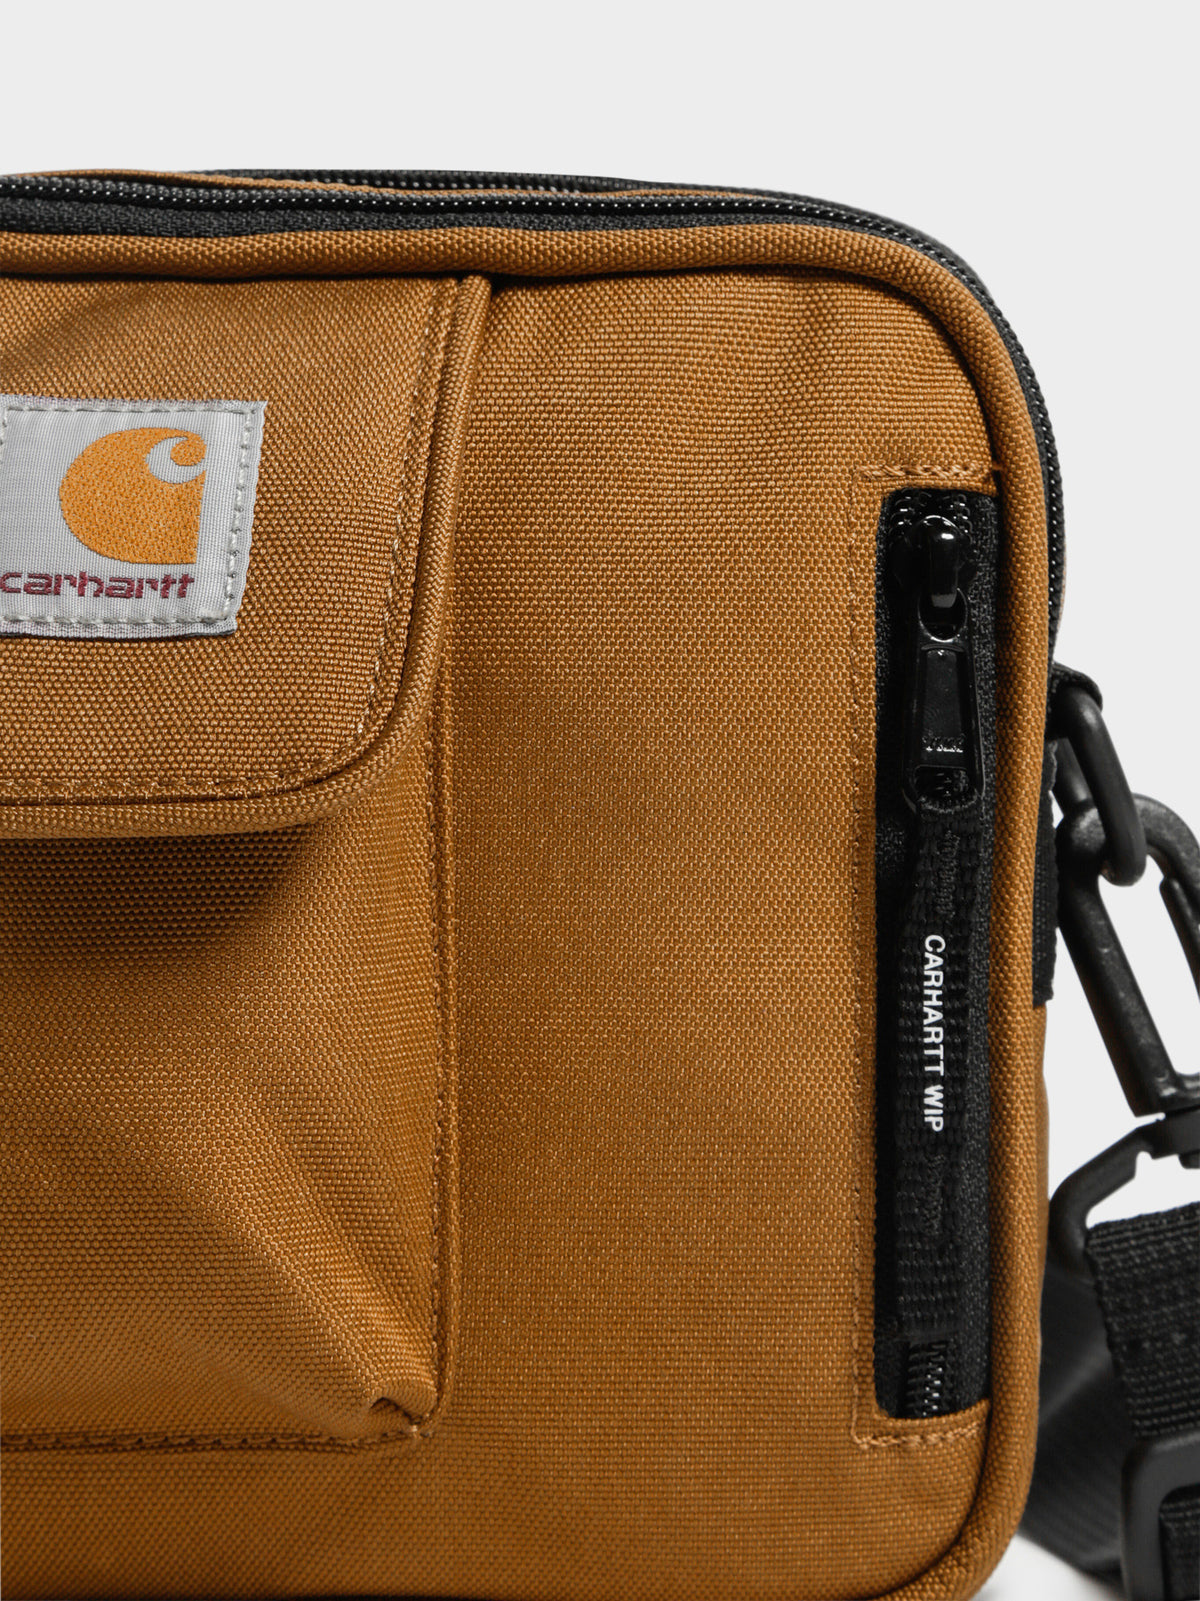 Essentials Small Cross Body Bag in Hamilton Brown